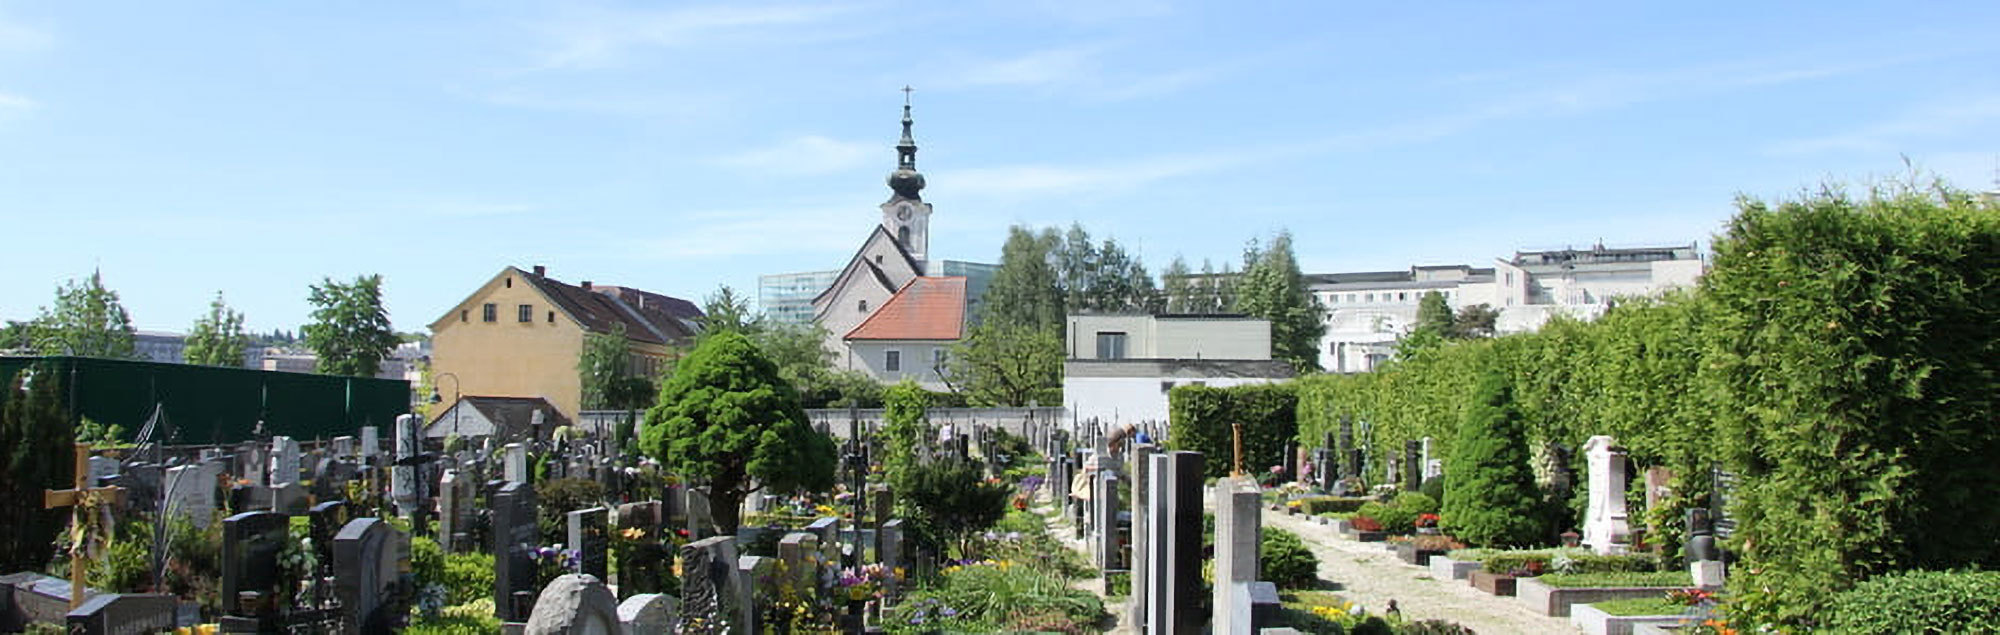 Friedhof Urfahr mit der Stadtpfarrkirche und dem AEC